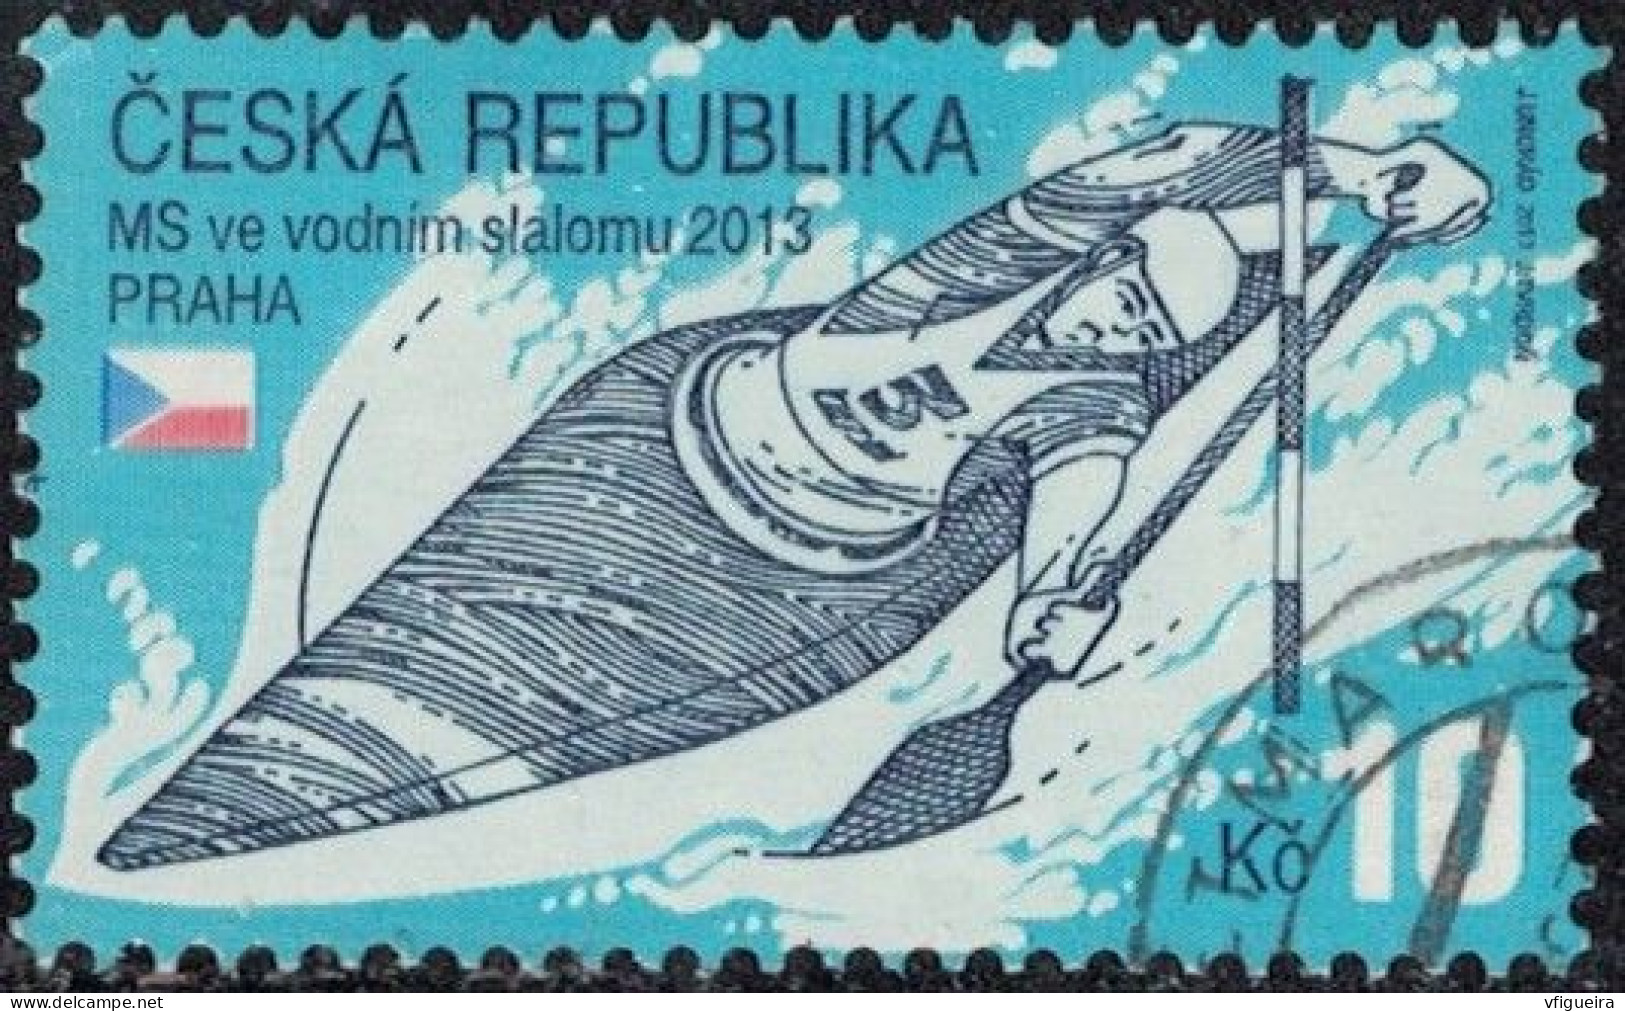 République Tchèque 2013 Oblitéré Used Championnats Du Monde De Slalom De Kayak Y&T CZ 686 SU - Usados